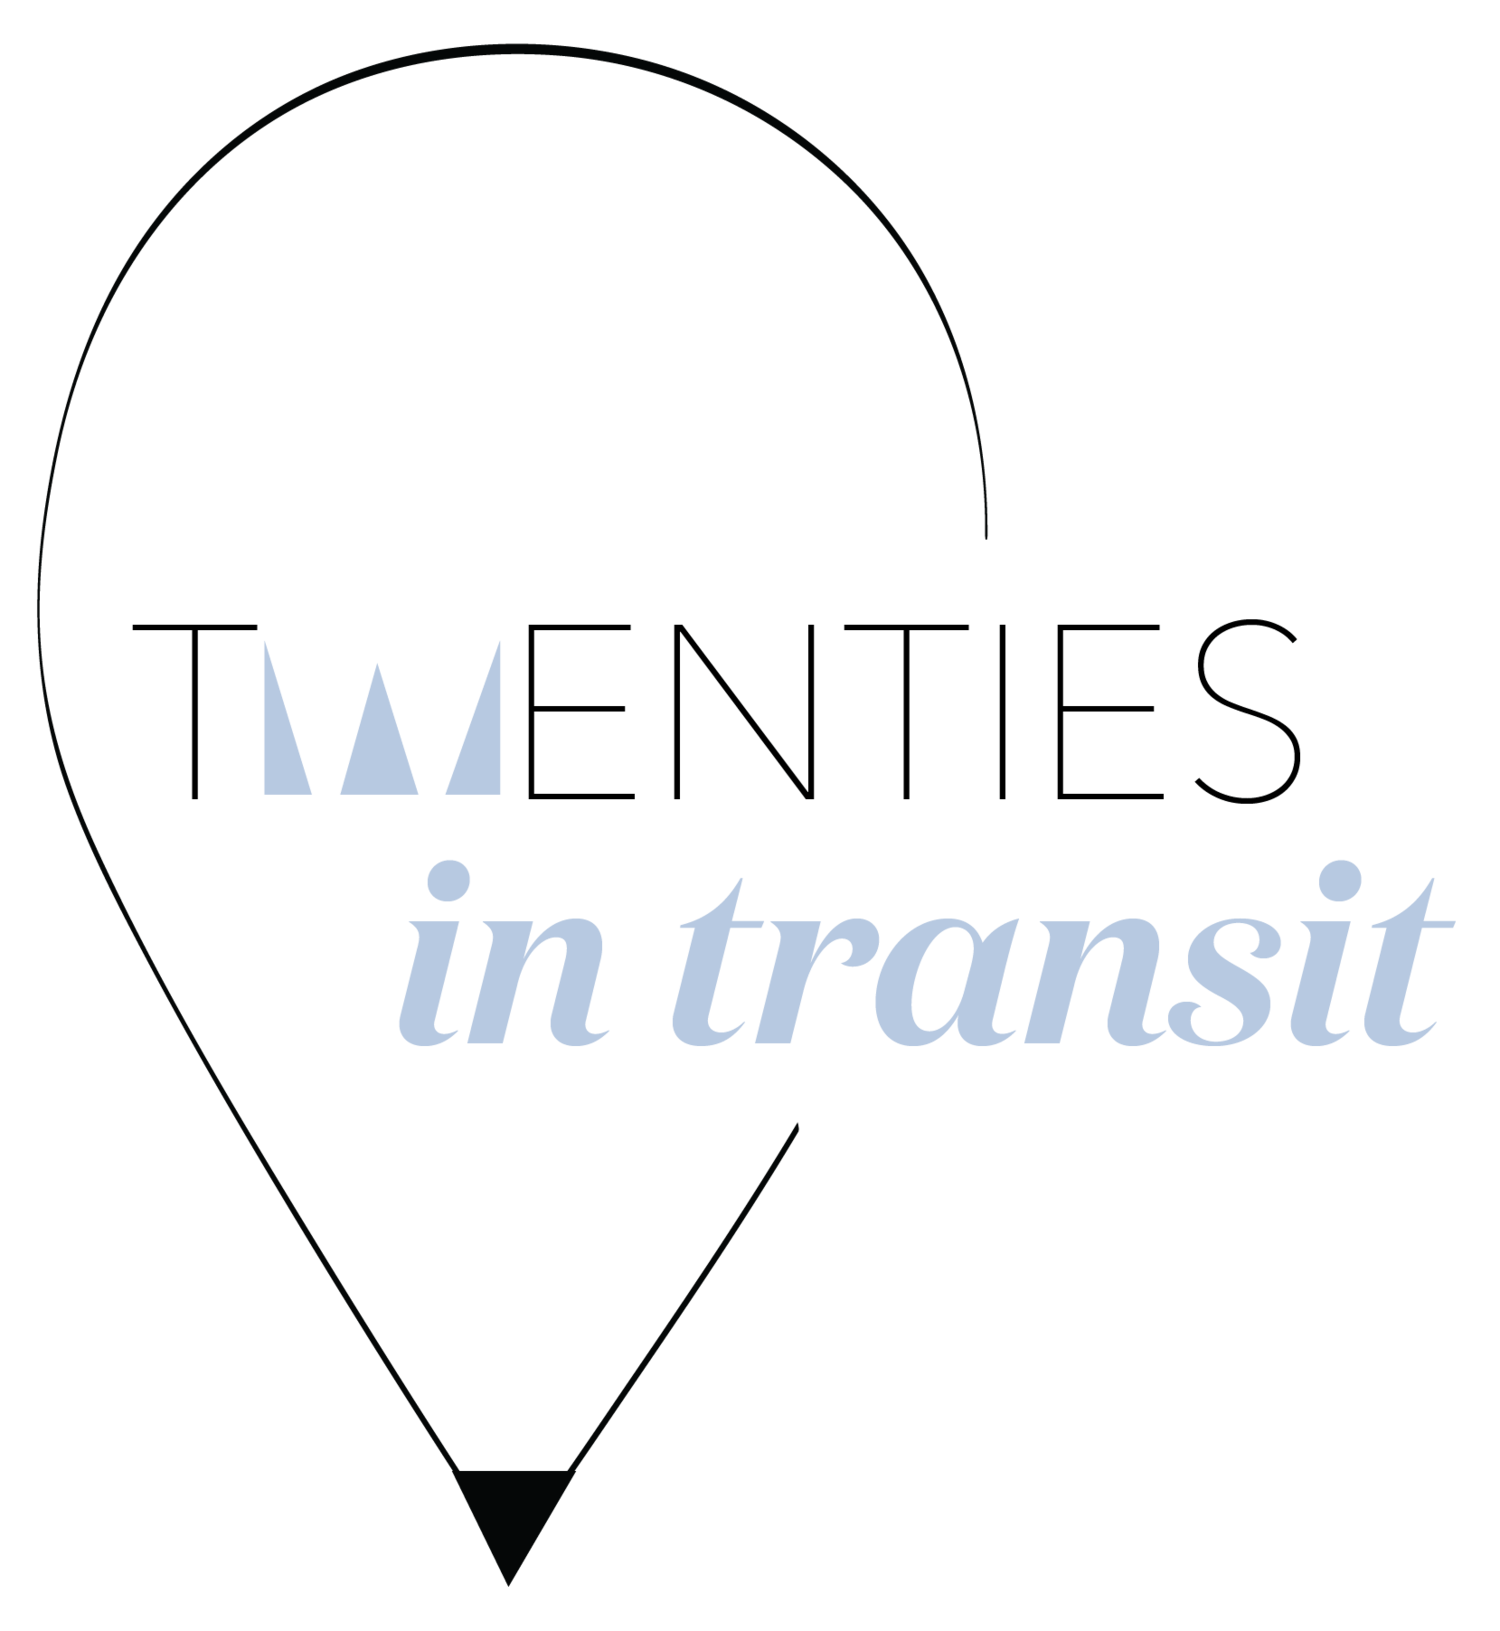 Triangle Transit Logo - Twenties in Transit